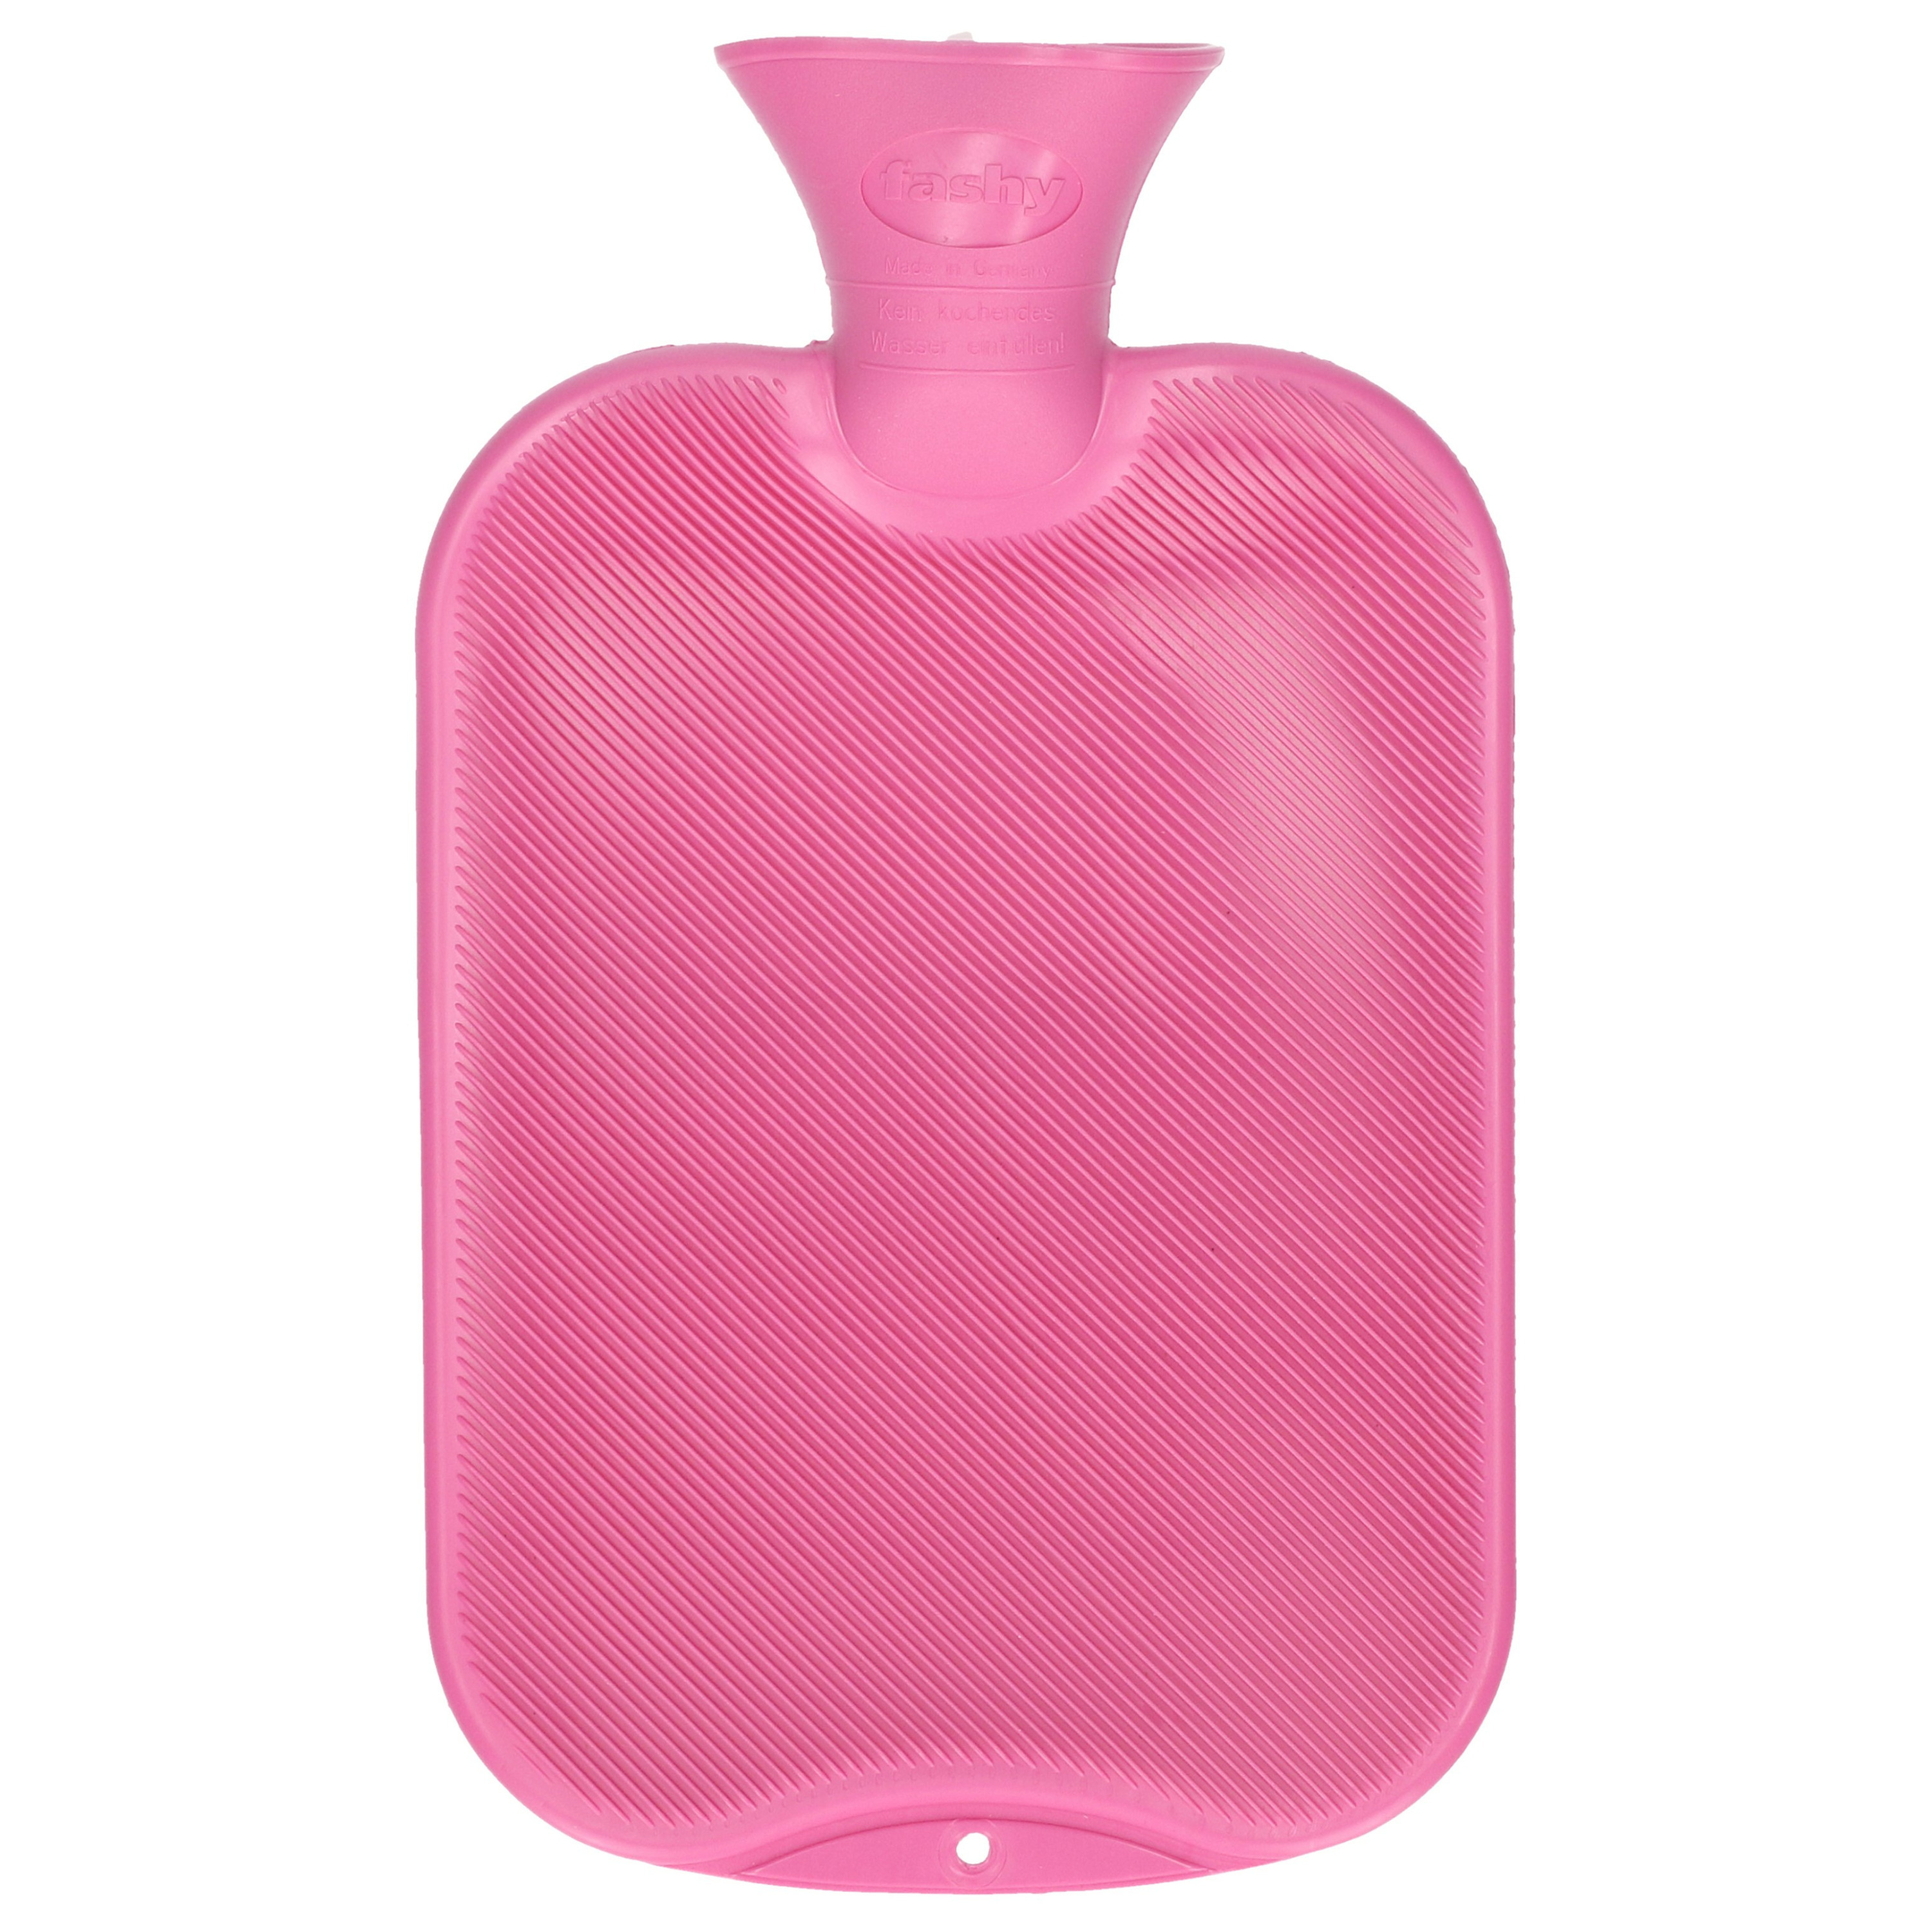 Fashy Kruik roze paars 2 liter -